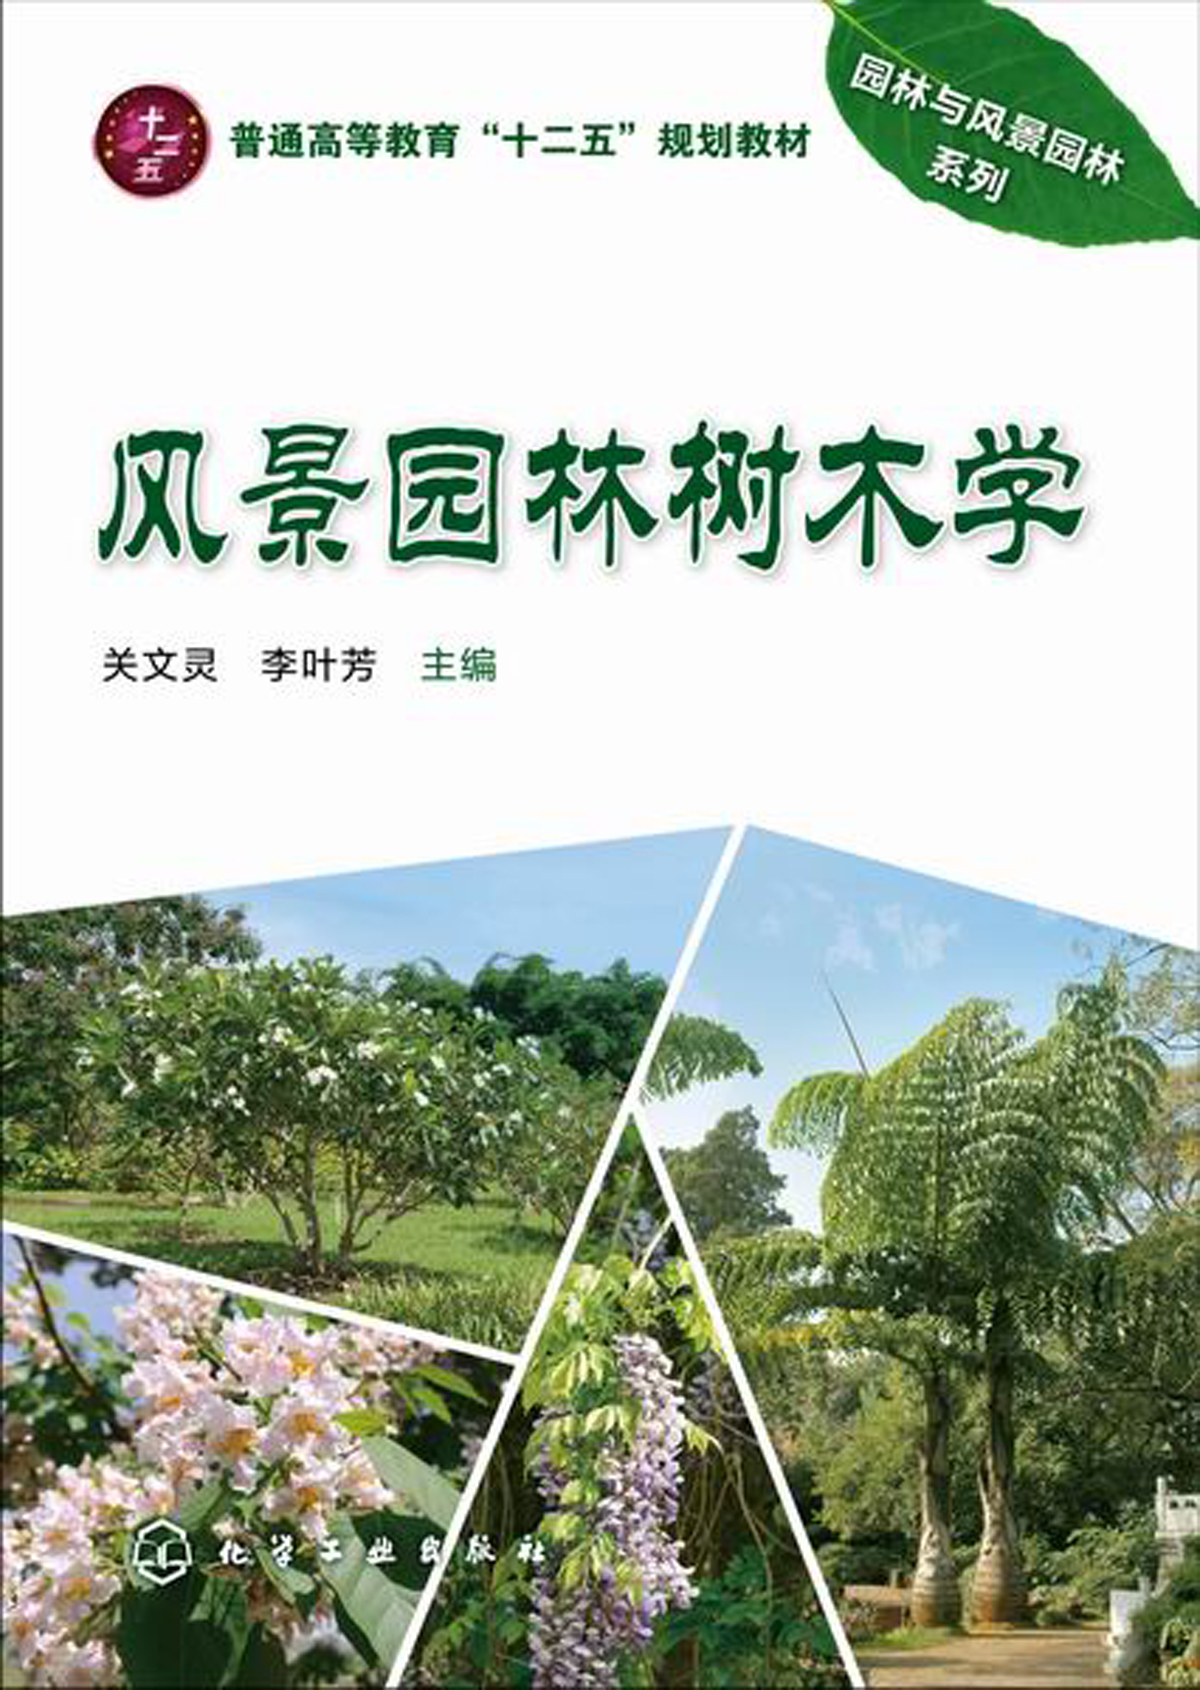 風景園林樹木學(2015年化學工業出版社出版的圖書)